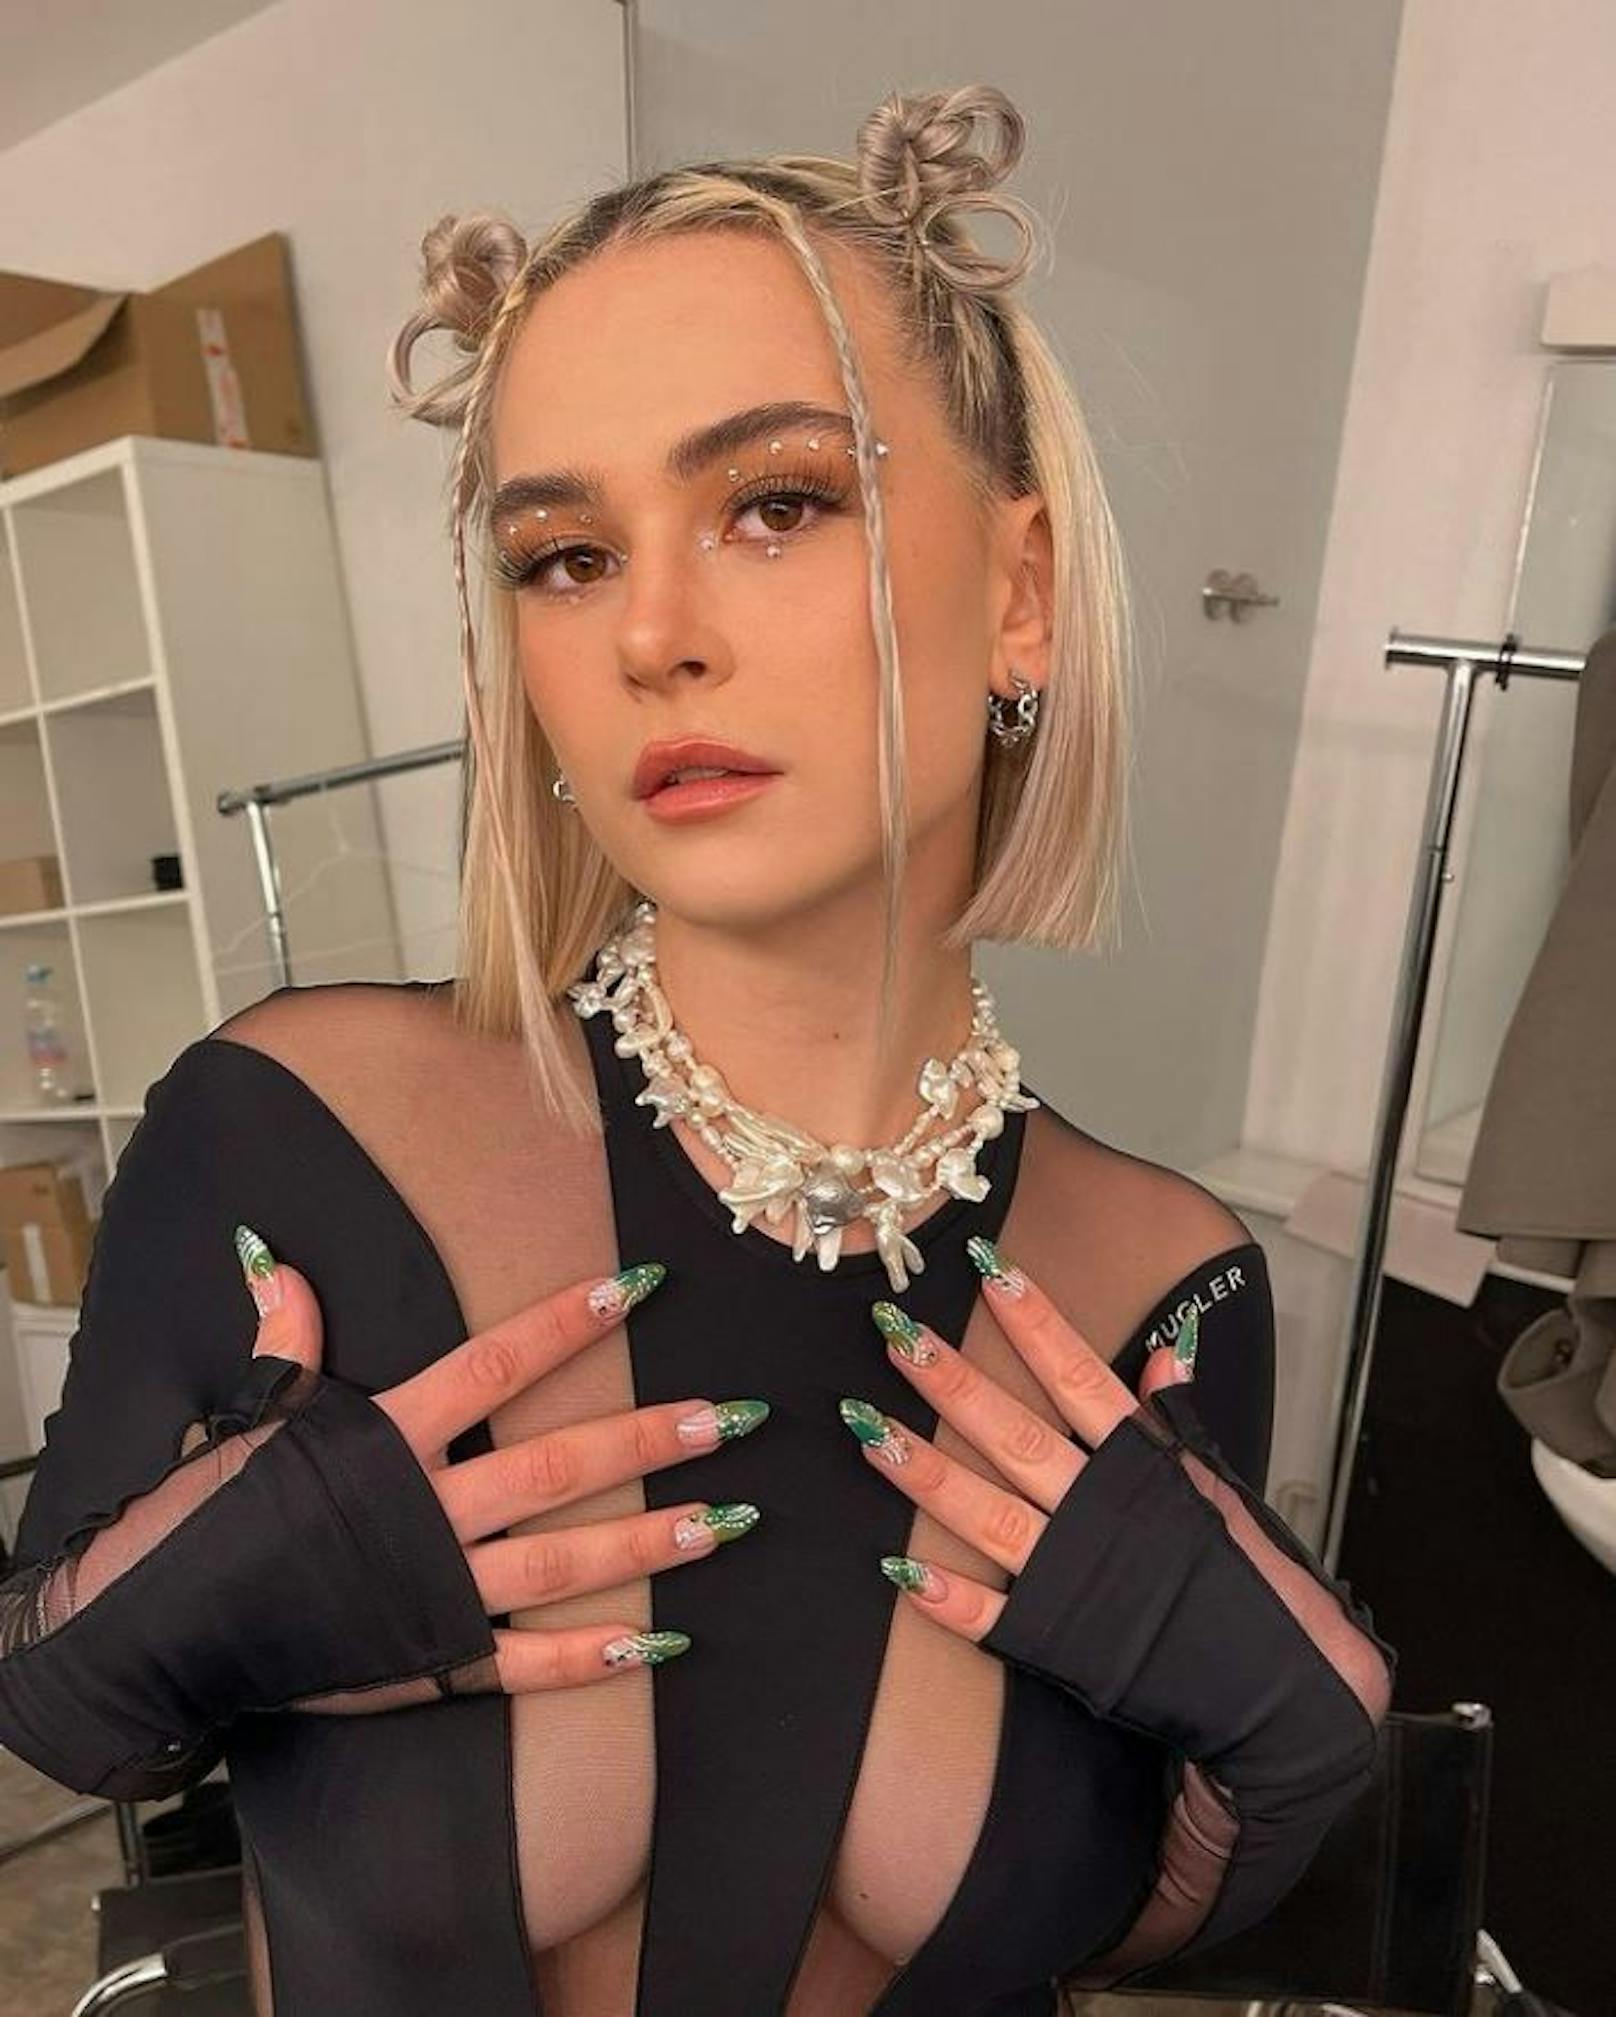 Austro-Star Mathea posiert im transparenten Outfit auf Instagram. Ihren Fans gefällt's.